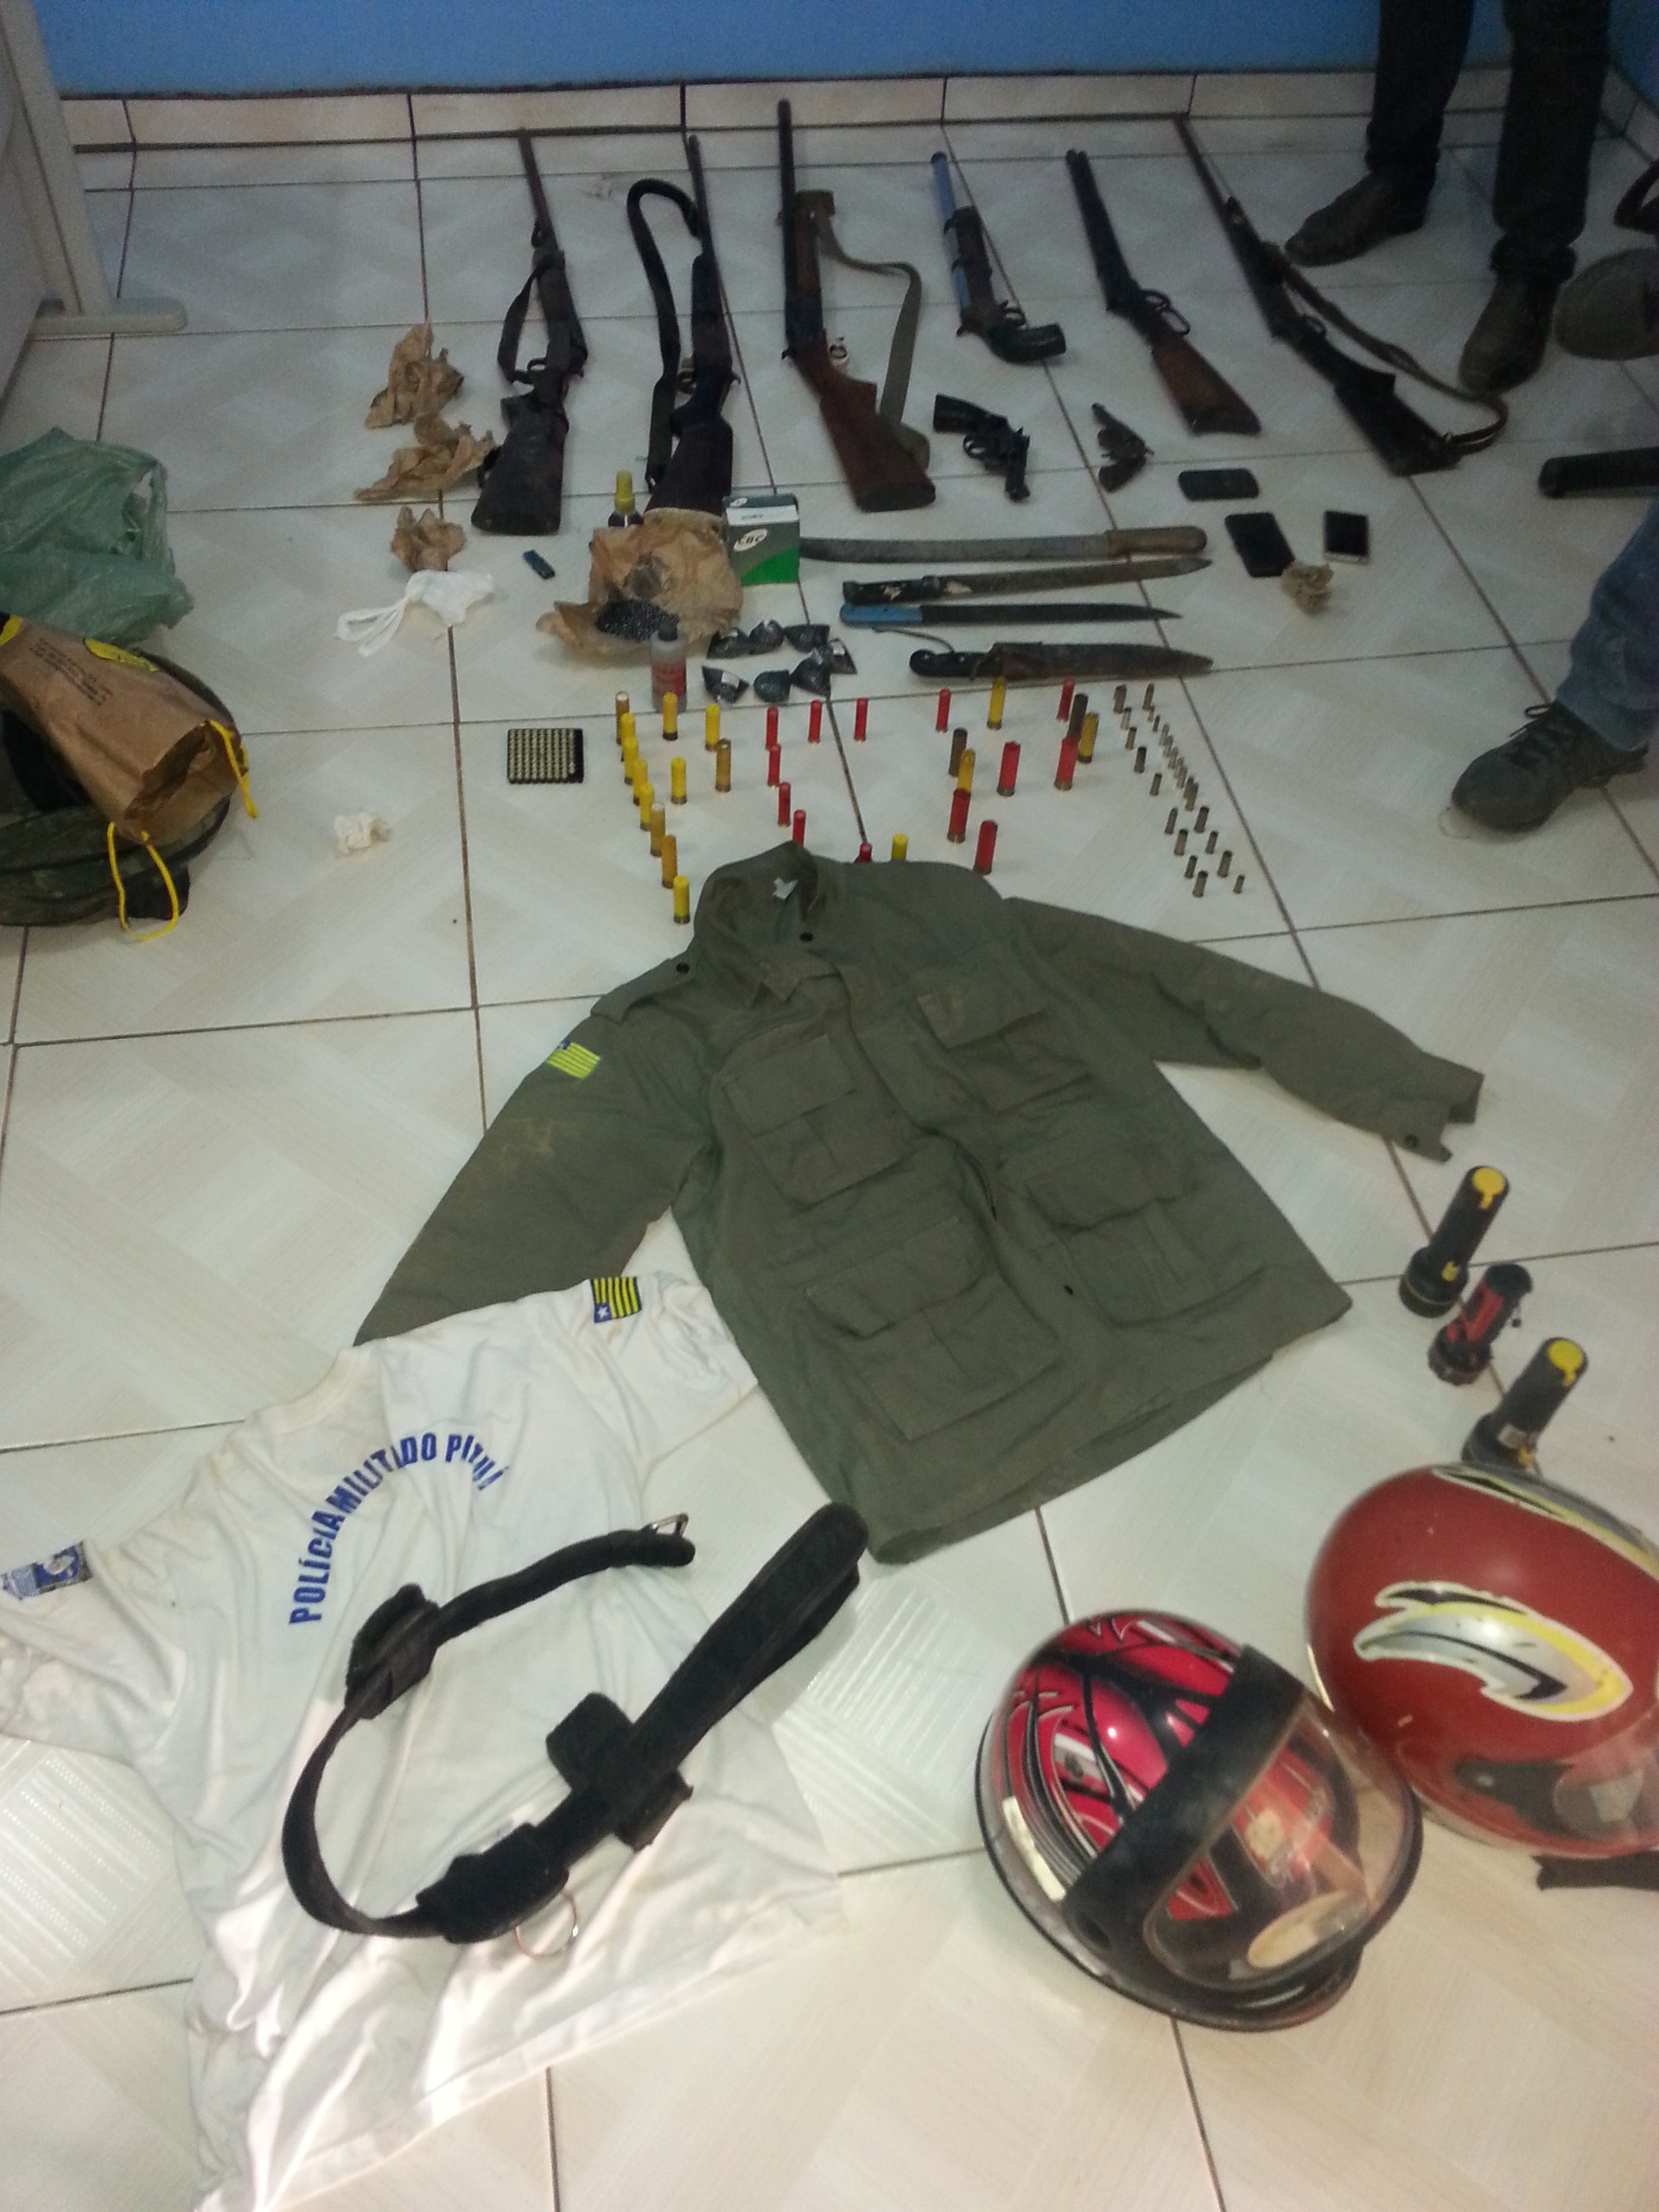 Farda e armas de uso restrito foram apreendidas durante operação (Foto: Polícia Civil)